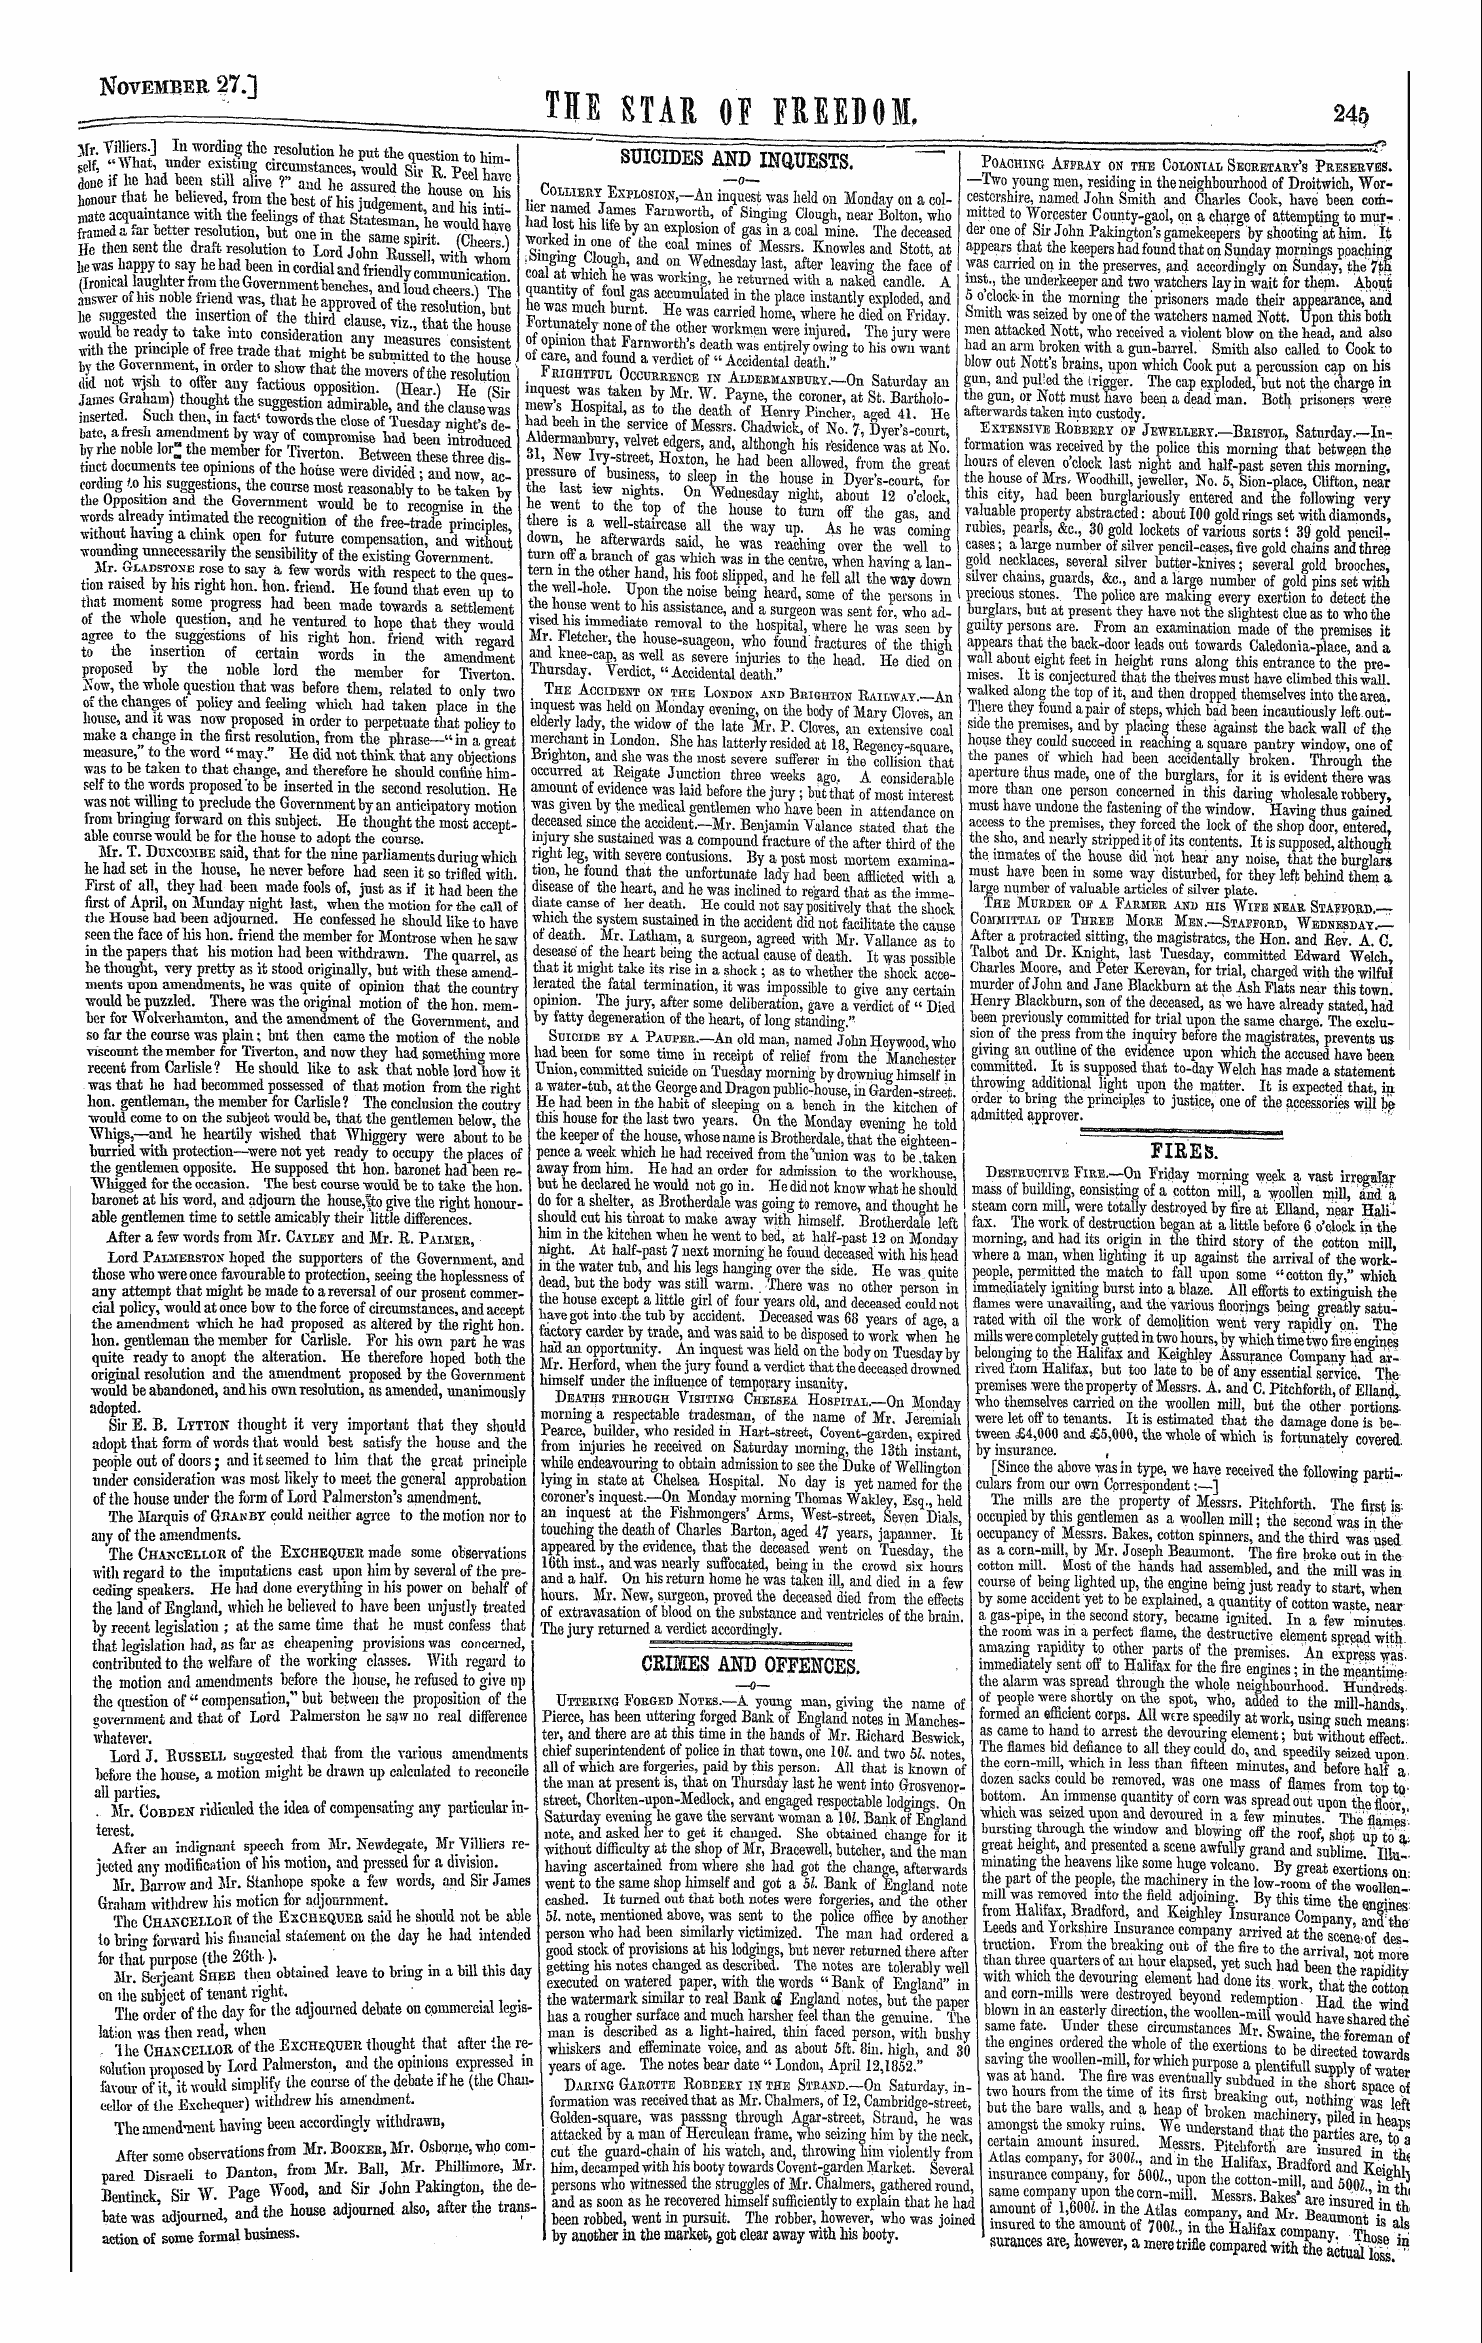 Northern Star (1837-1852): jS F Y, 1st edition - Ar00306